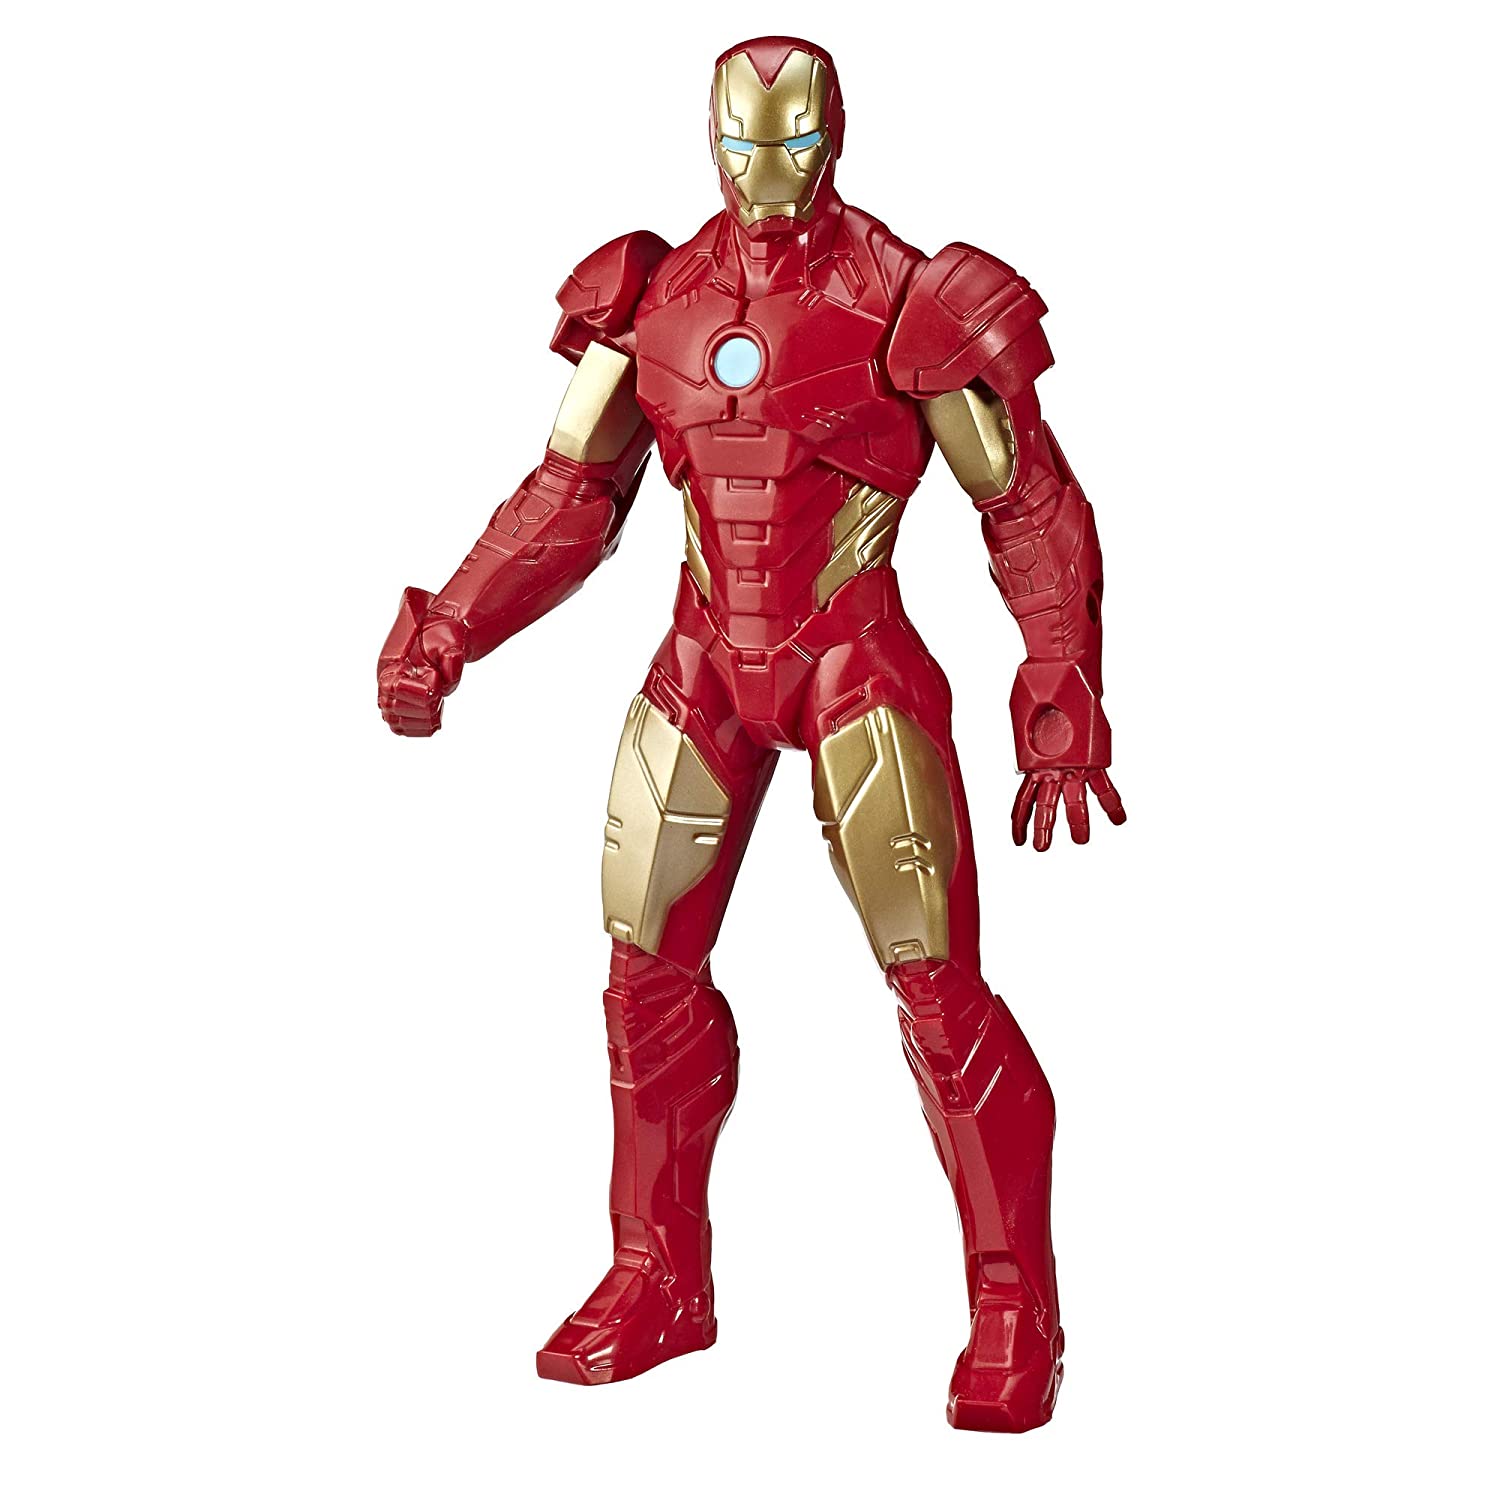 Marvel Super hero Iron Man Toys for Kids - StarAndDaisy